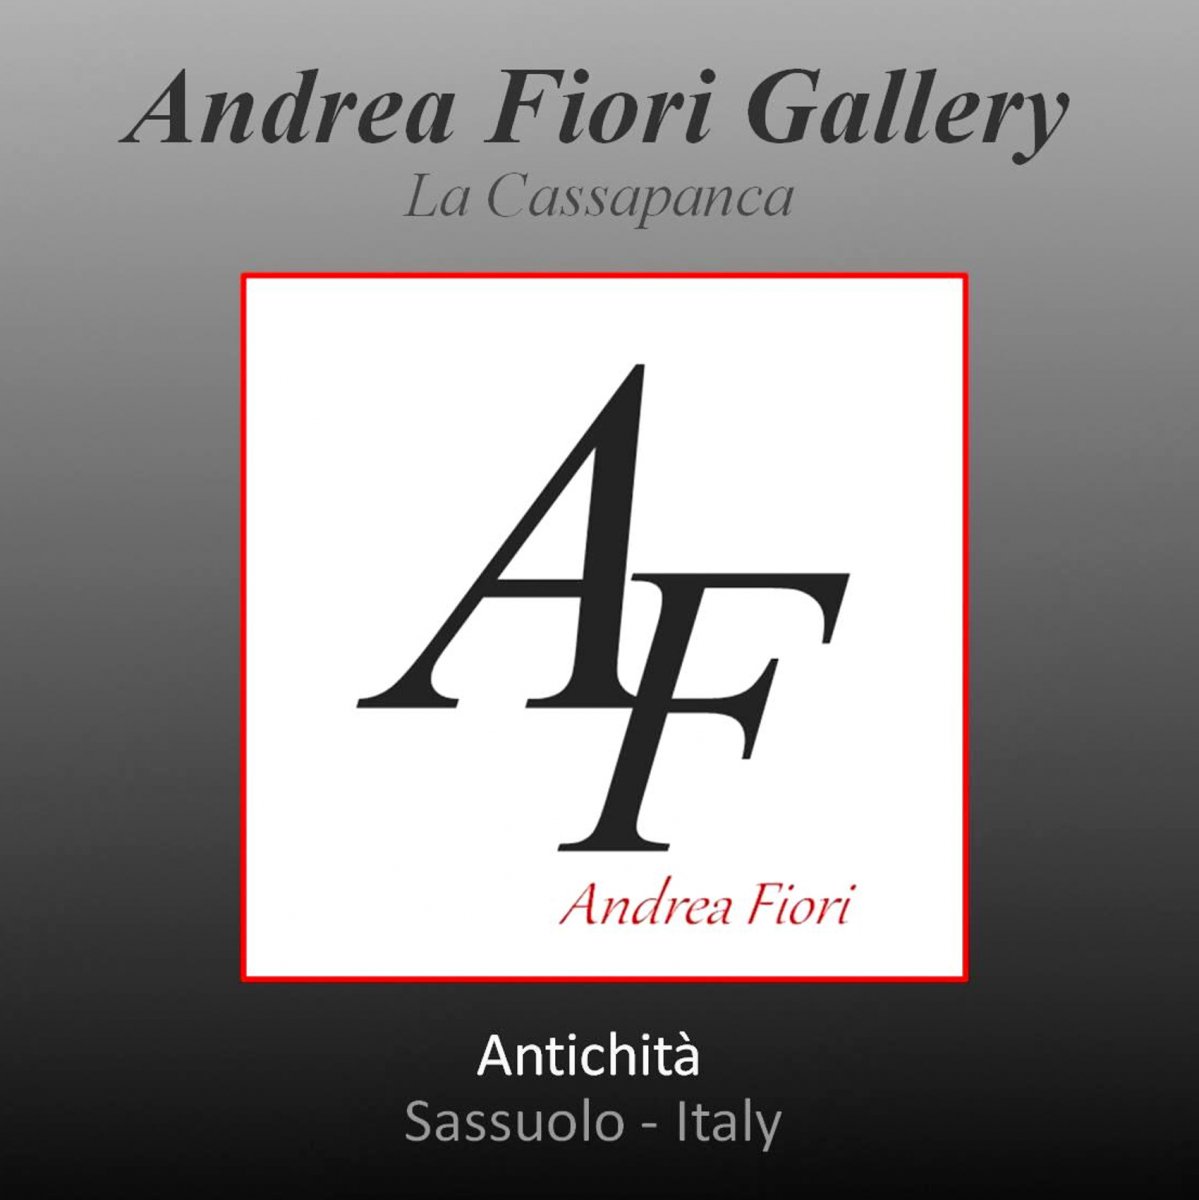 Andrea Fiori Gallery - La Cassapanca